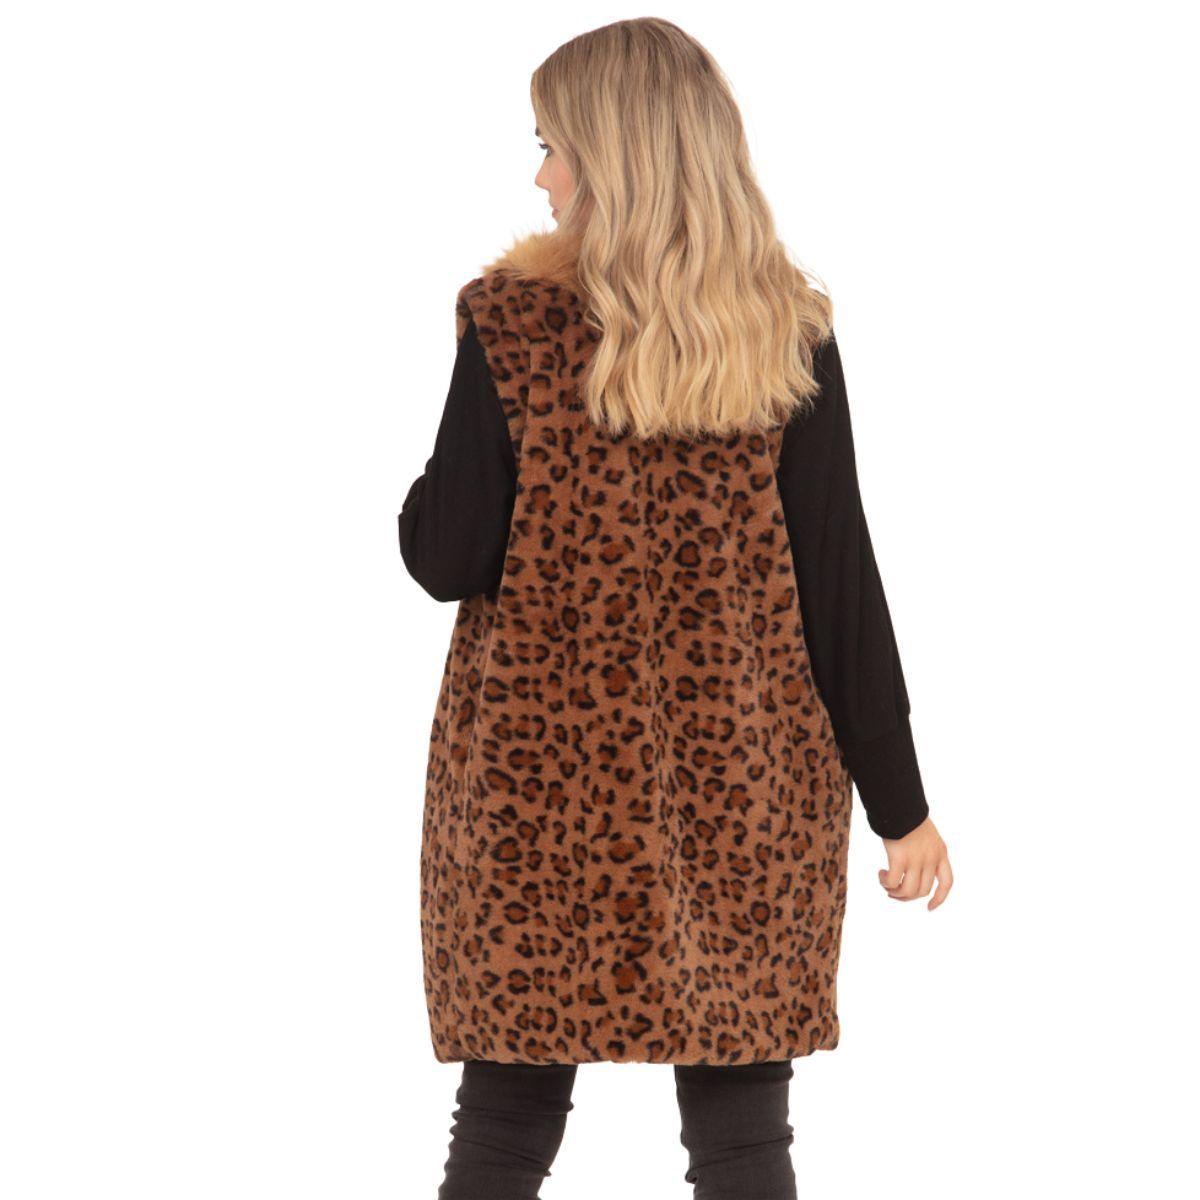 Get Ready to Roar: Trendy Brown Leopard Fun Fur Vest for Women - Buy Now